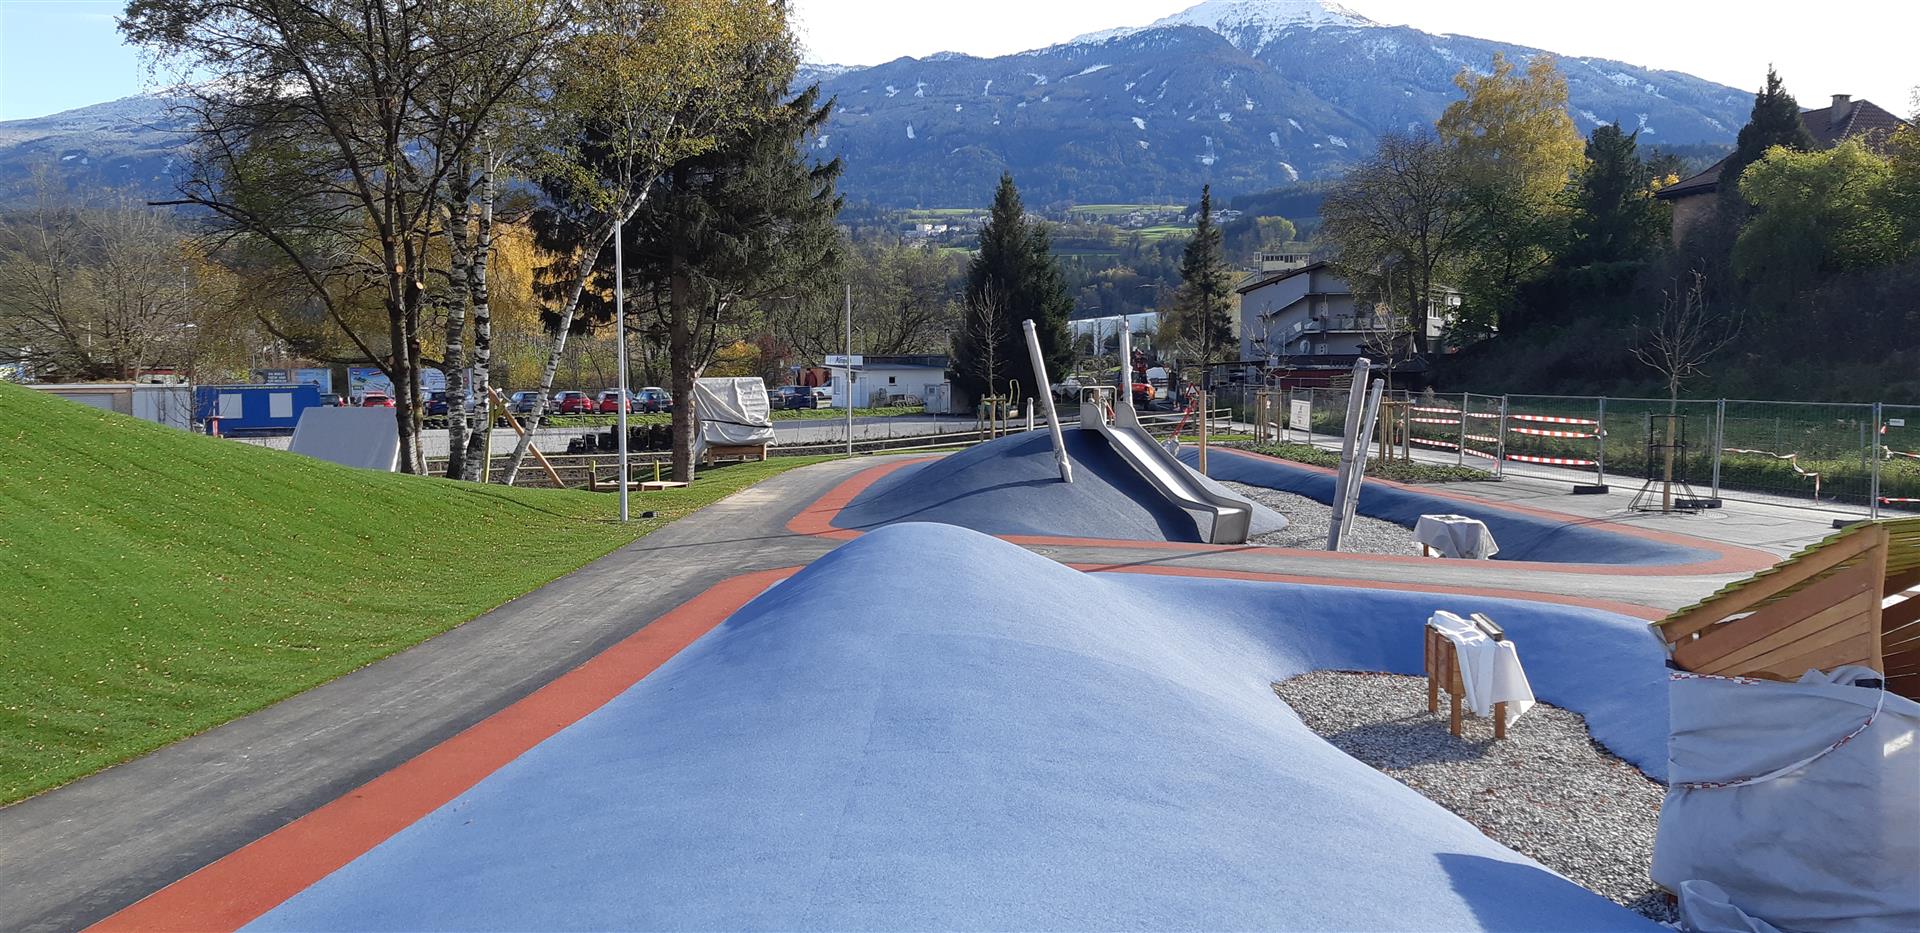 Freizeitpark, Innsbruck - Construcții civile